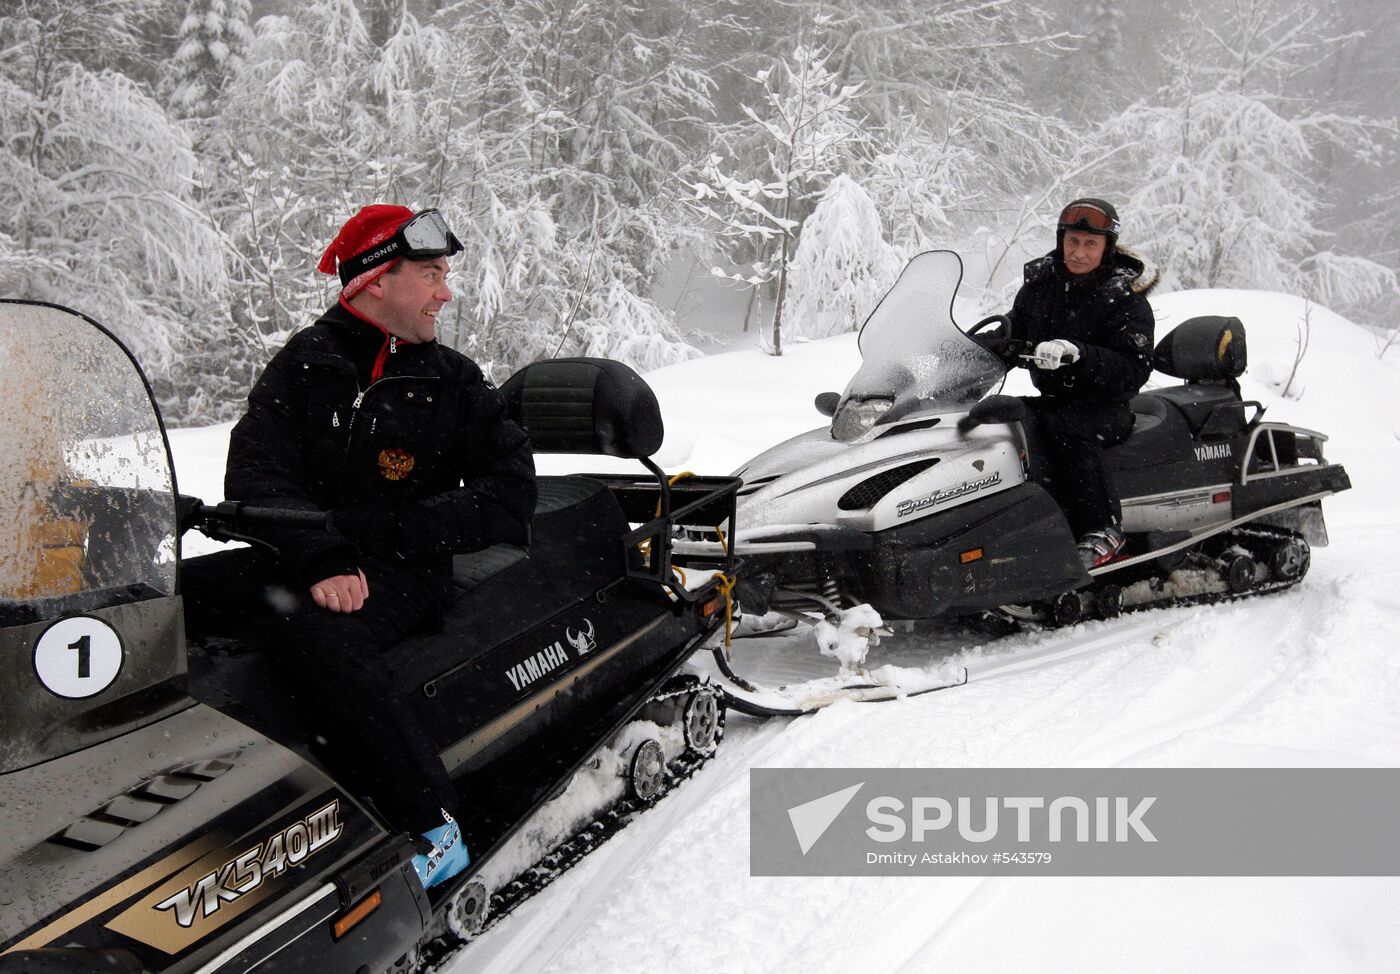 Dmitry Medvedev, Vladimir Putin at ski resort Krasnaya Polyana